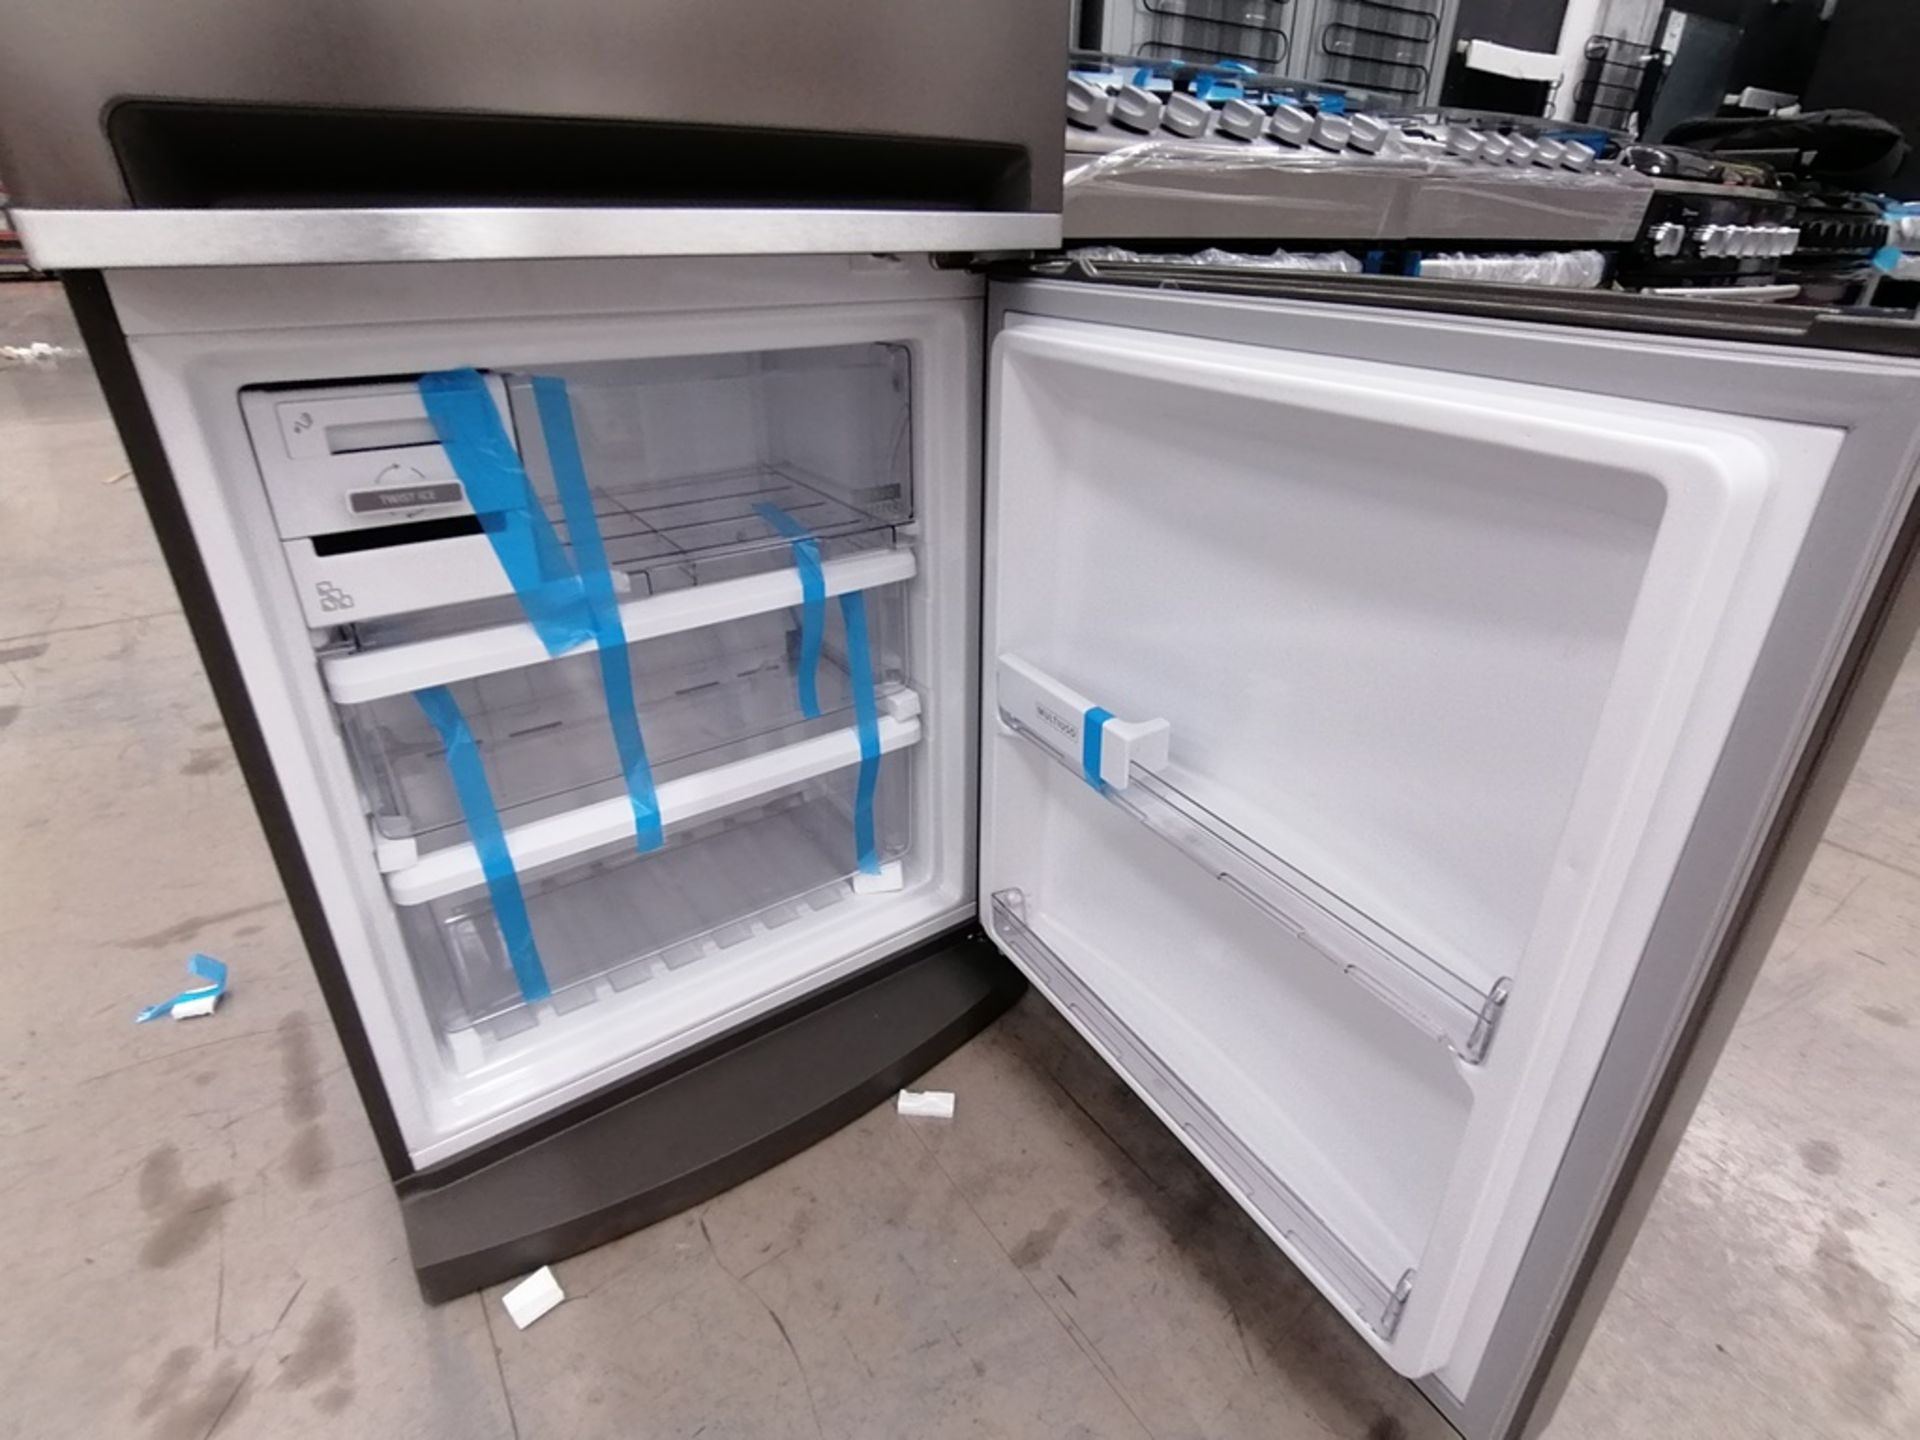 1 Refrigerador Marca Whirlpool, Color Gris, Modelo WRE57BKTWW, Serie JL1135984, Golpeado Favor de I - Image 7 of 11